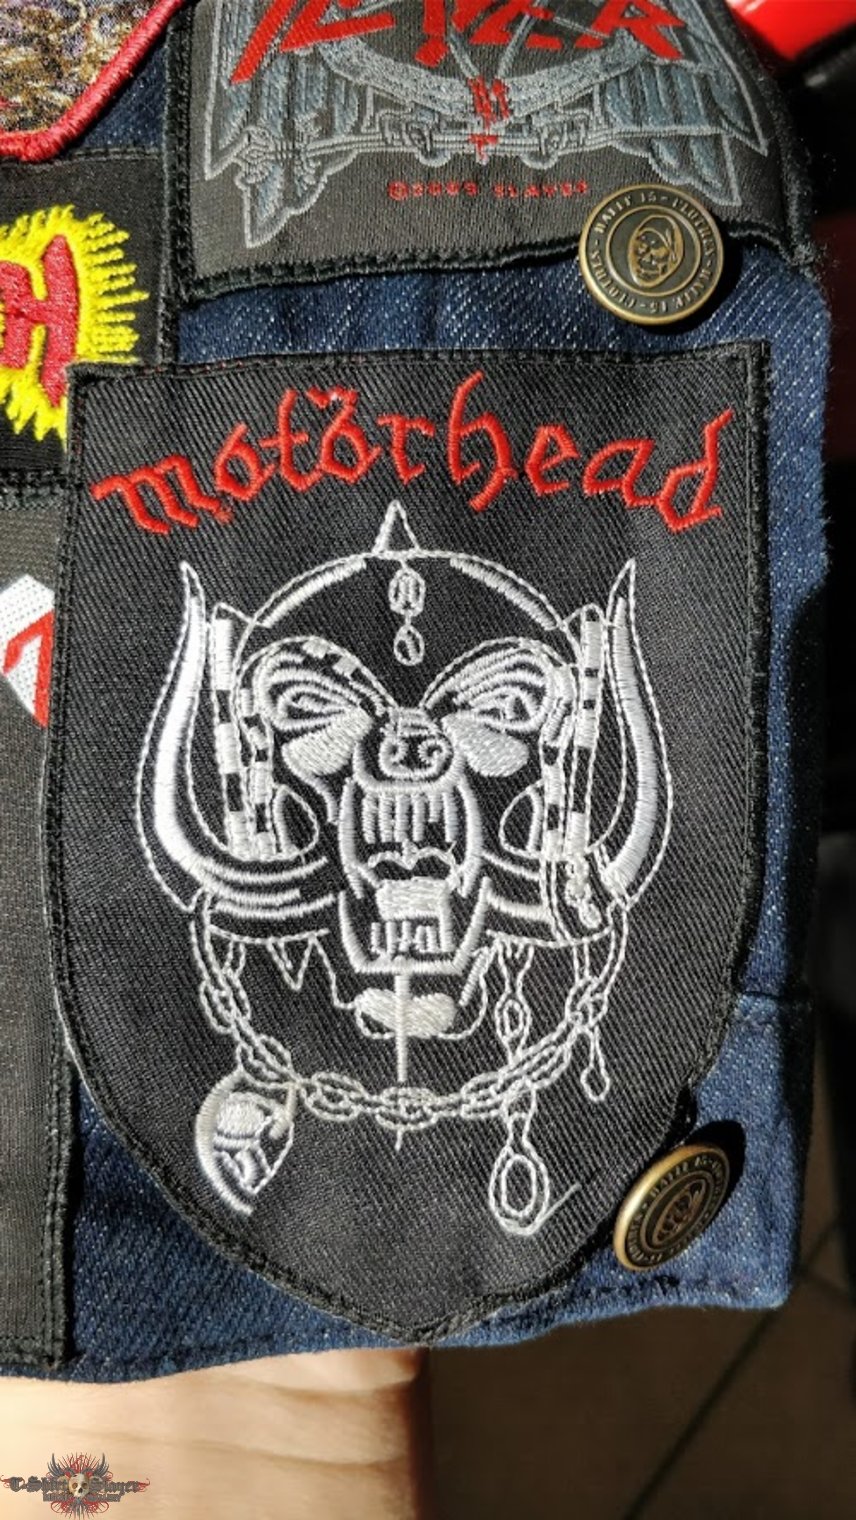 Motörhead Mötorhead - Snaggletooth - Woven Patch